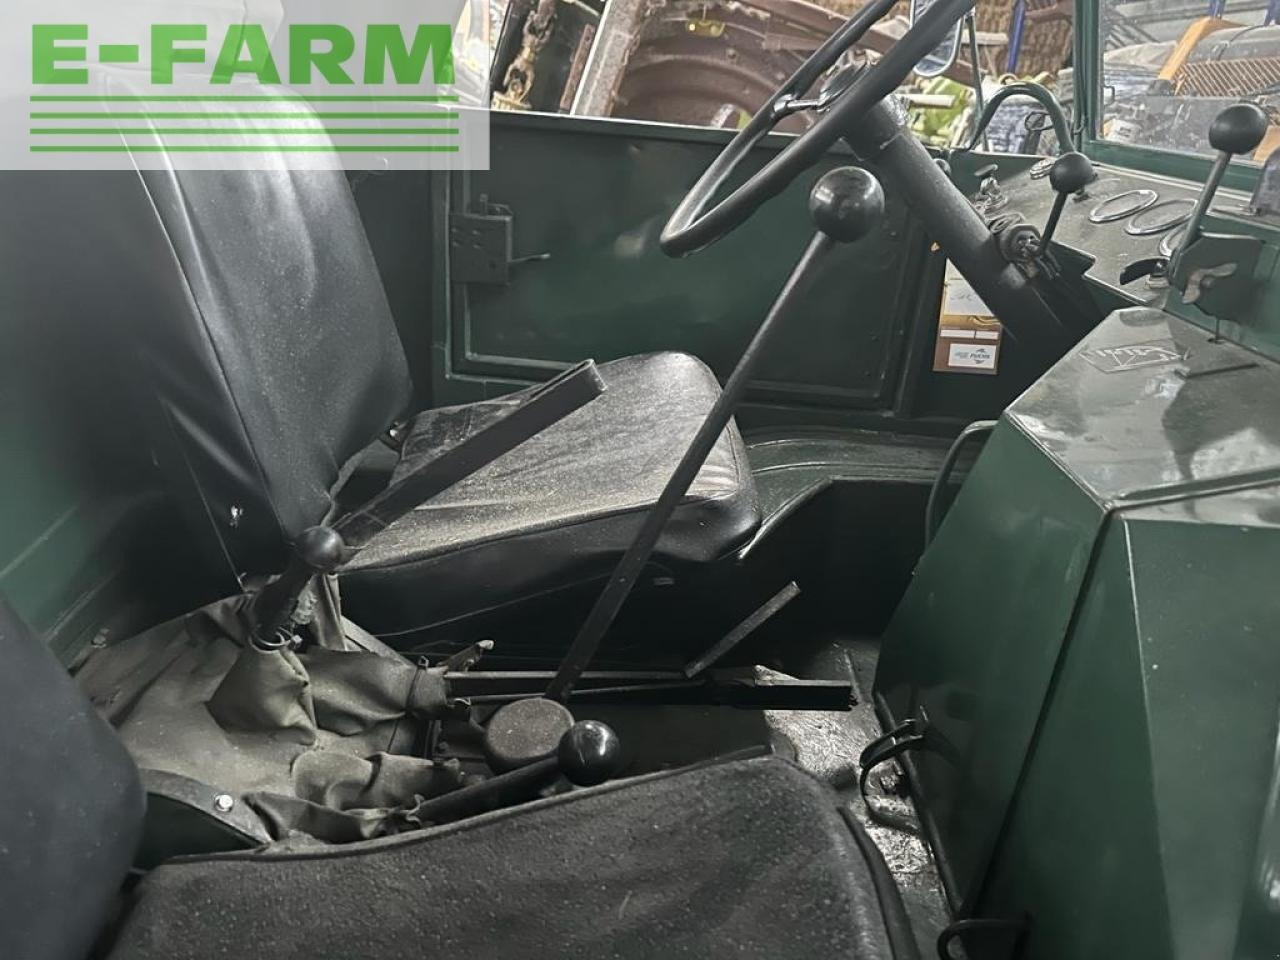 Farm tractor Mercedes-Benz u411 agrar heckhydraulik 2dw bj65: picture 27